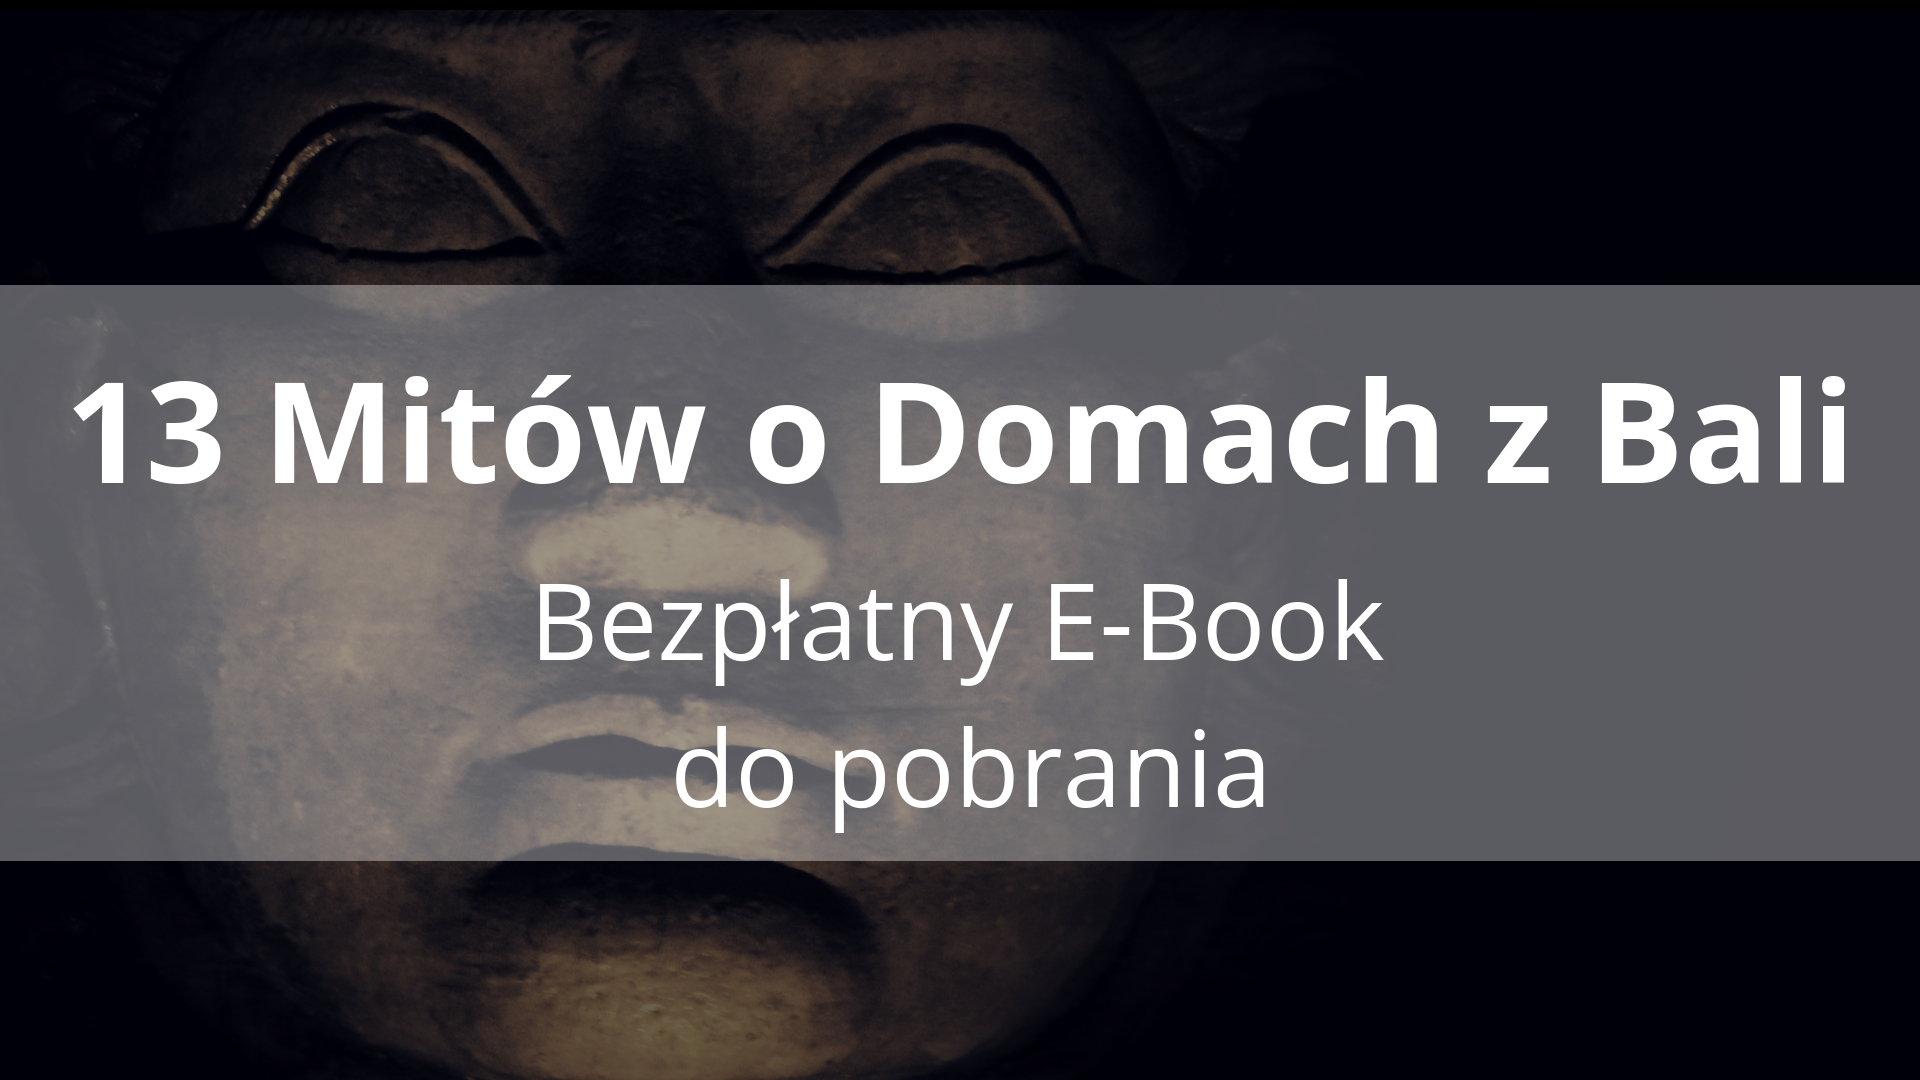 Bezpłatny E-book 13 mitów o domach z bali do pobrania, domy z bali jak budować, baleidetale.pl